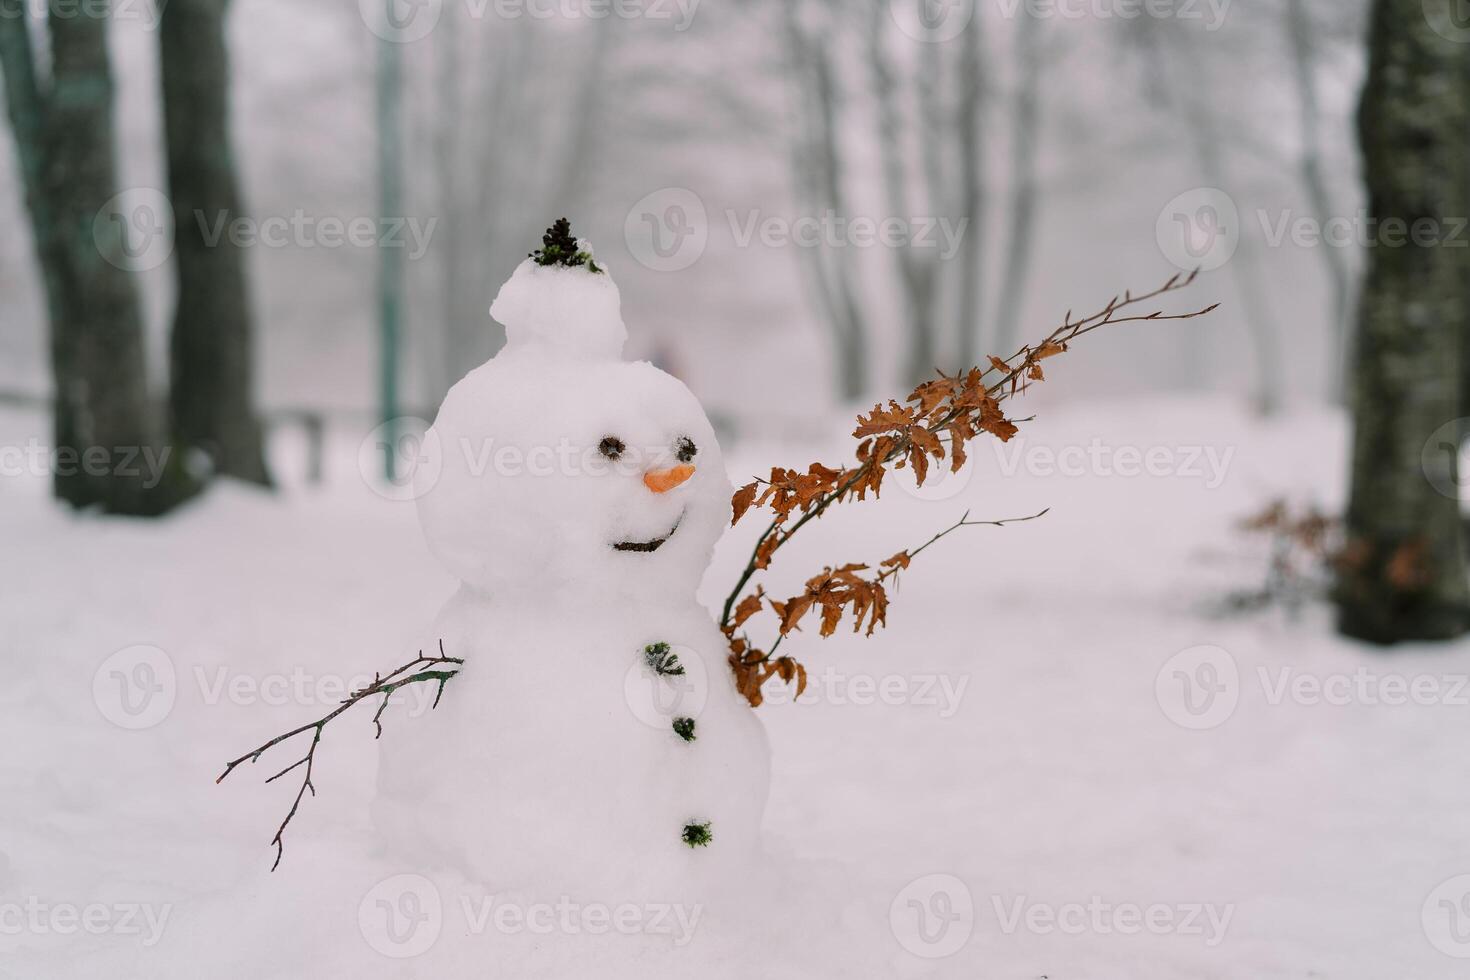 souriant bonhomme de neige dans une chapeau avec une carotte nez et mains de brindilles dans une neigeux parc photo